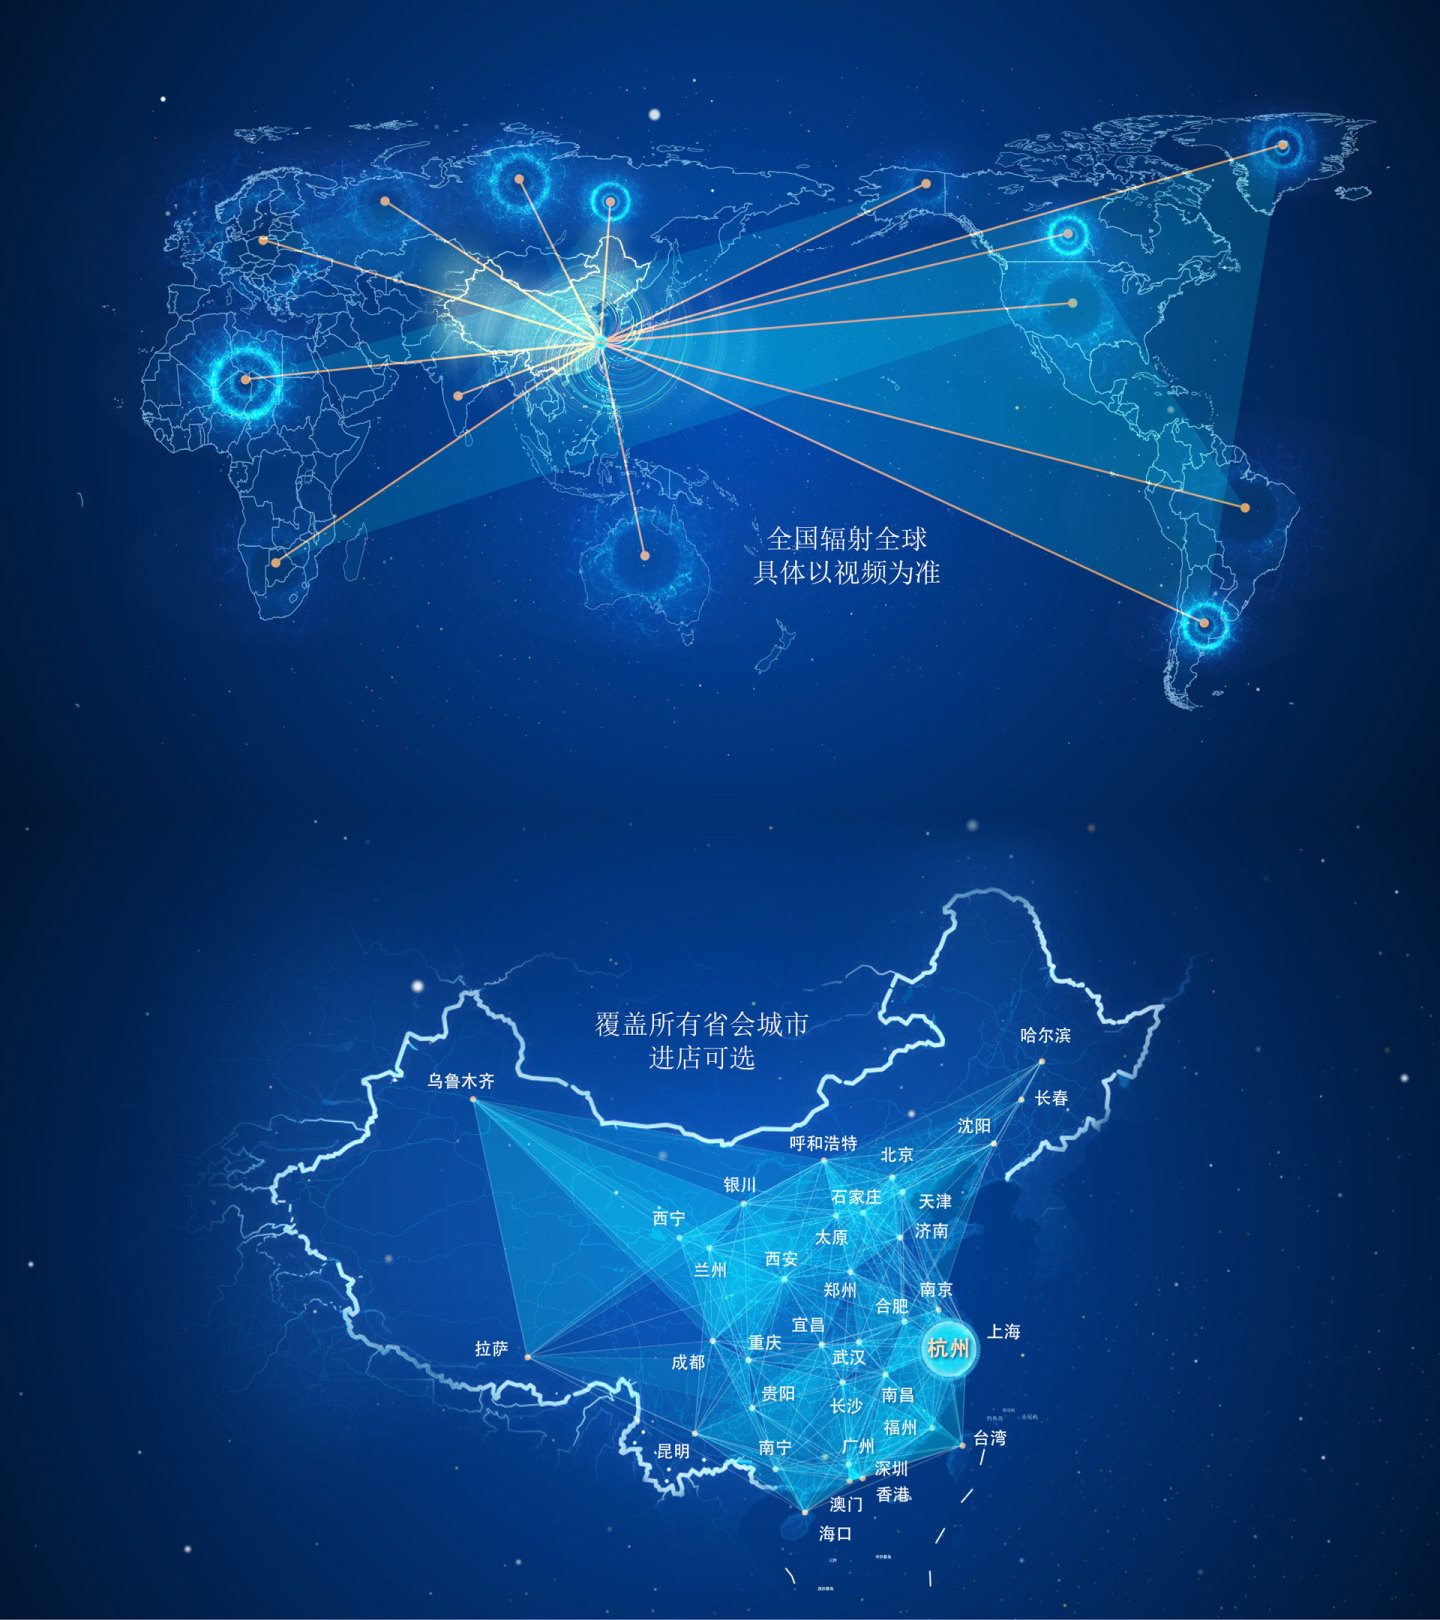 银川宁夏 地图辐射 辐射世界 辐射中国